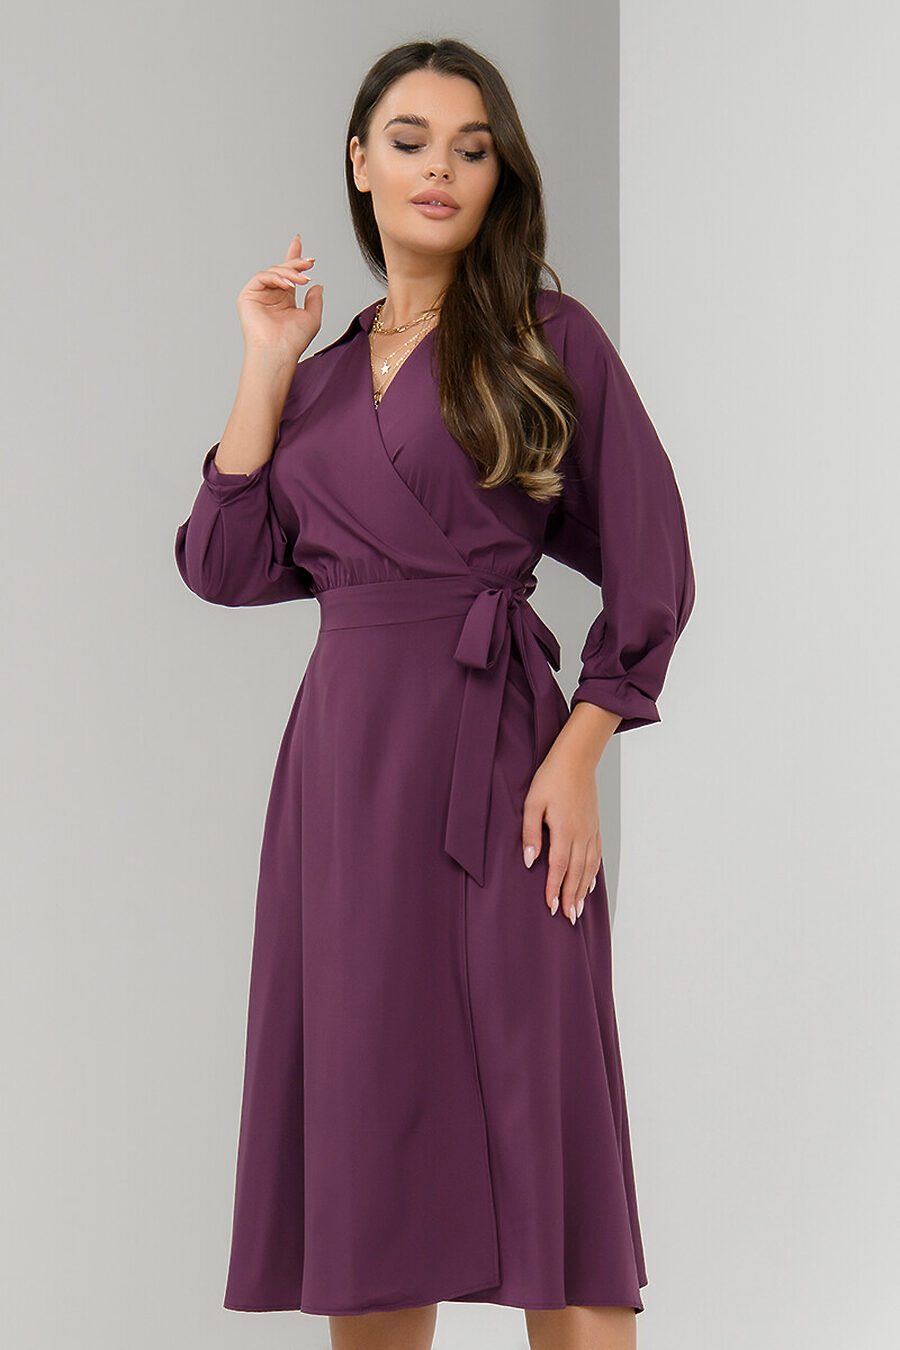 Платье для женщин 1001 DRESS 712359 купить оптом от производителя. Совместная покупка женской одежды в OptMoyo